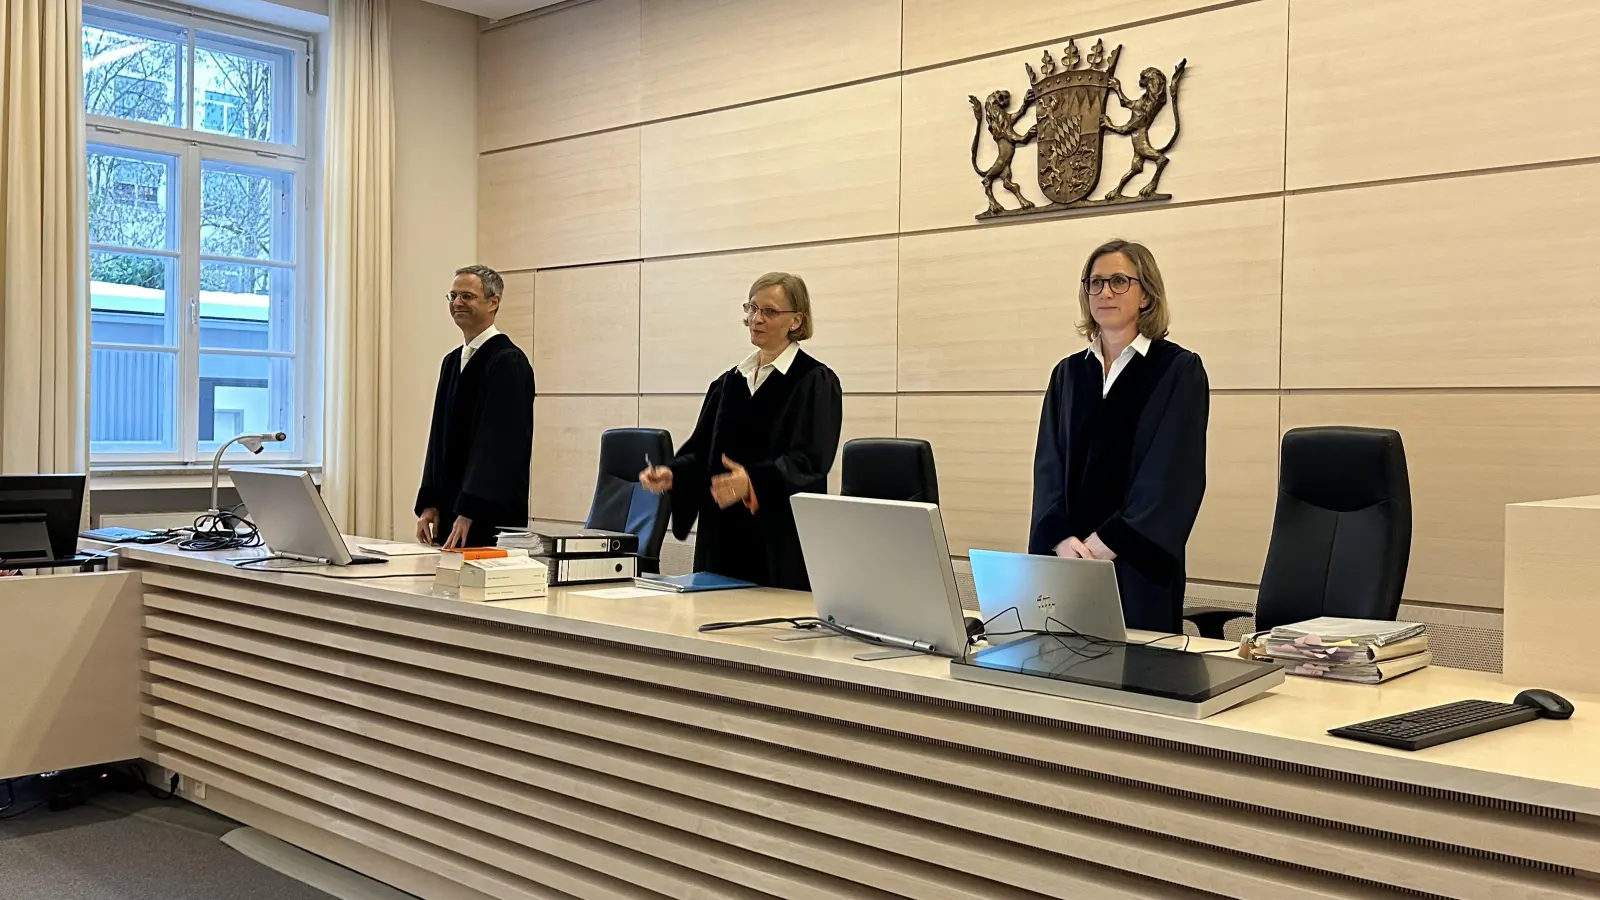 Der 8. Senat des Verwaltungsgerichtshofs mit der Vorsitzenden Judith Müller (Mitte) hat die Klage des Bund Naturschutz abgelehnt. (Foto: Gudrun Bayer)